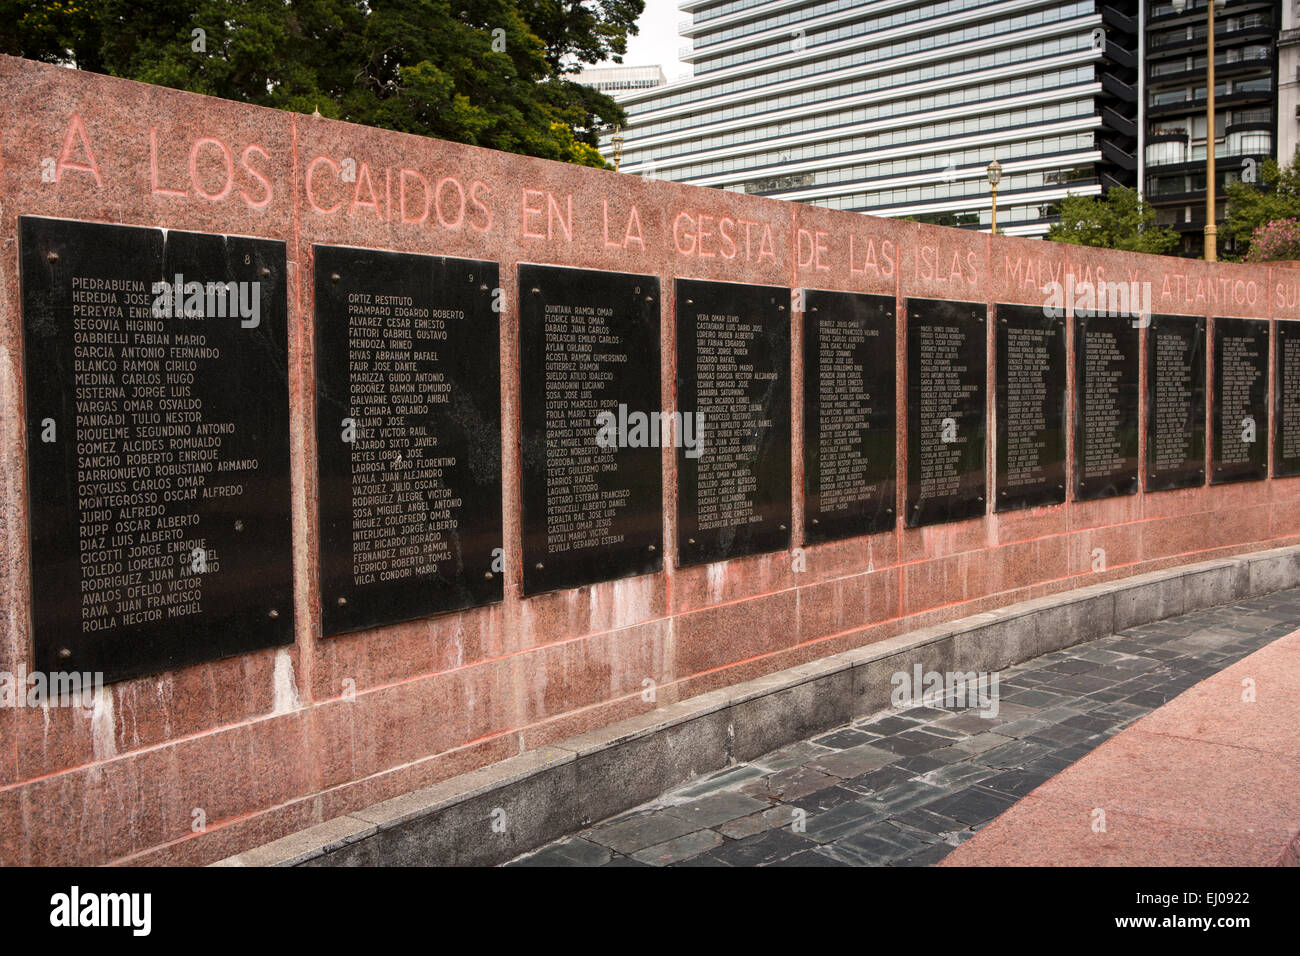 L'ARGENTINE, Buenos Aires, Retiro, la Plaza General San Martin, le Monumento Islas Malvinas, monument aux morts de la guerre des Malouines Banque D'Images